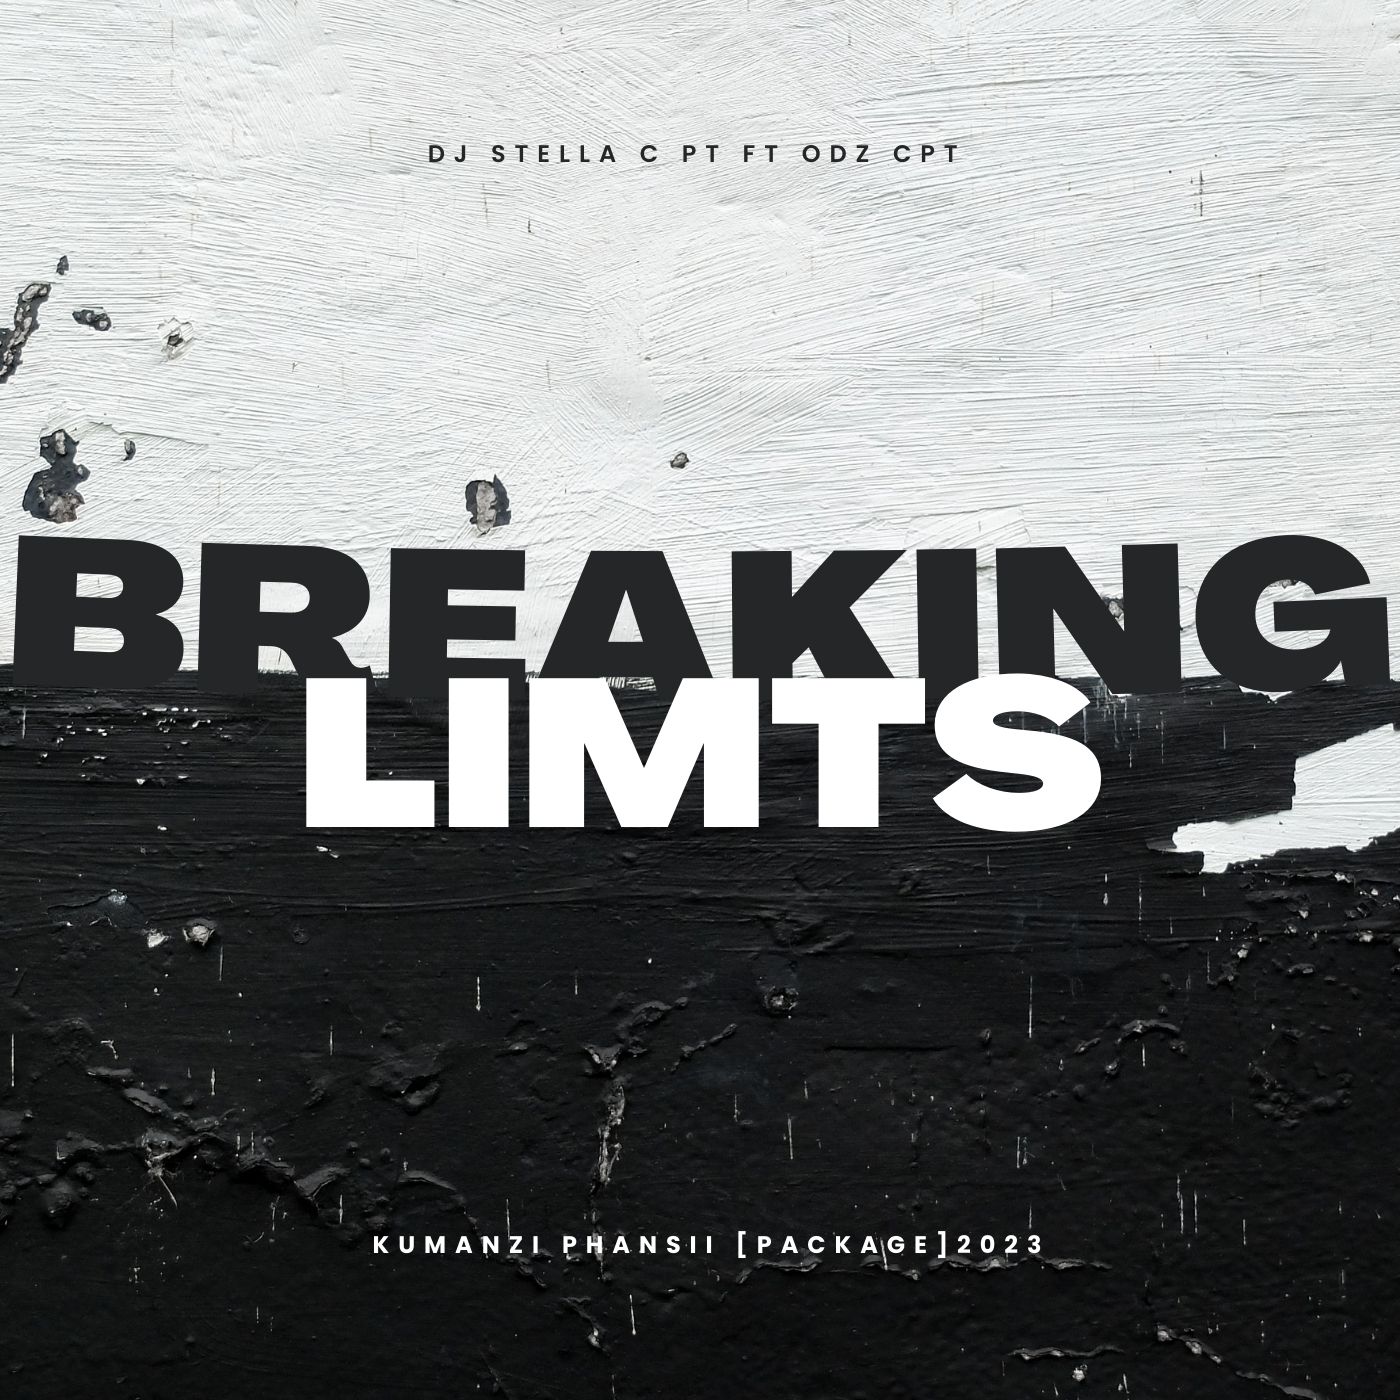 Breaking limits - Dj Stella Ft Odz CPT